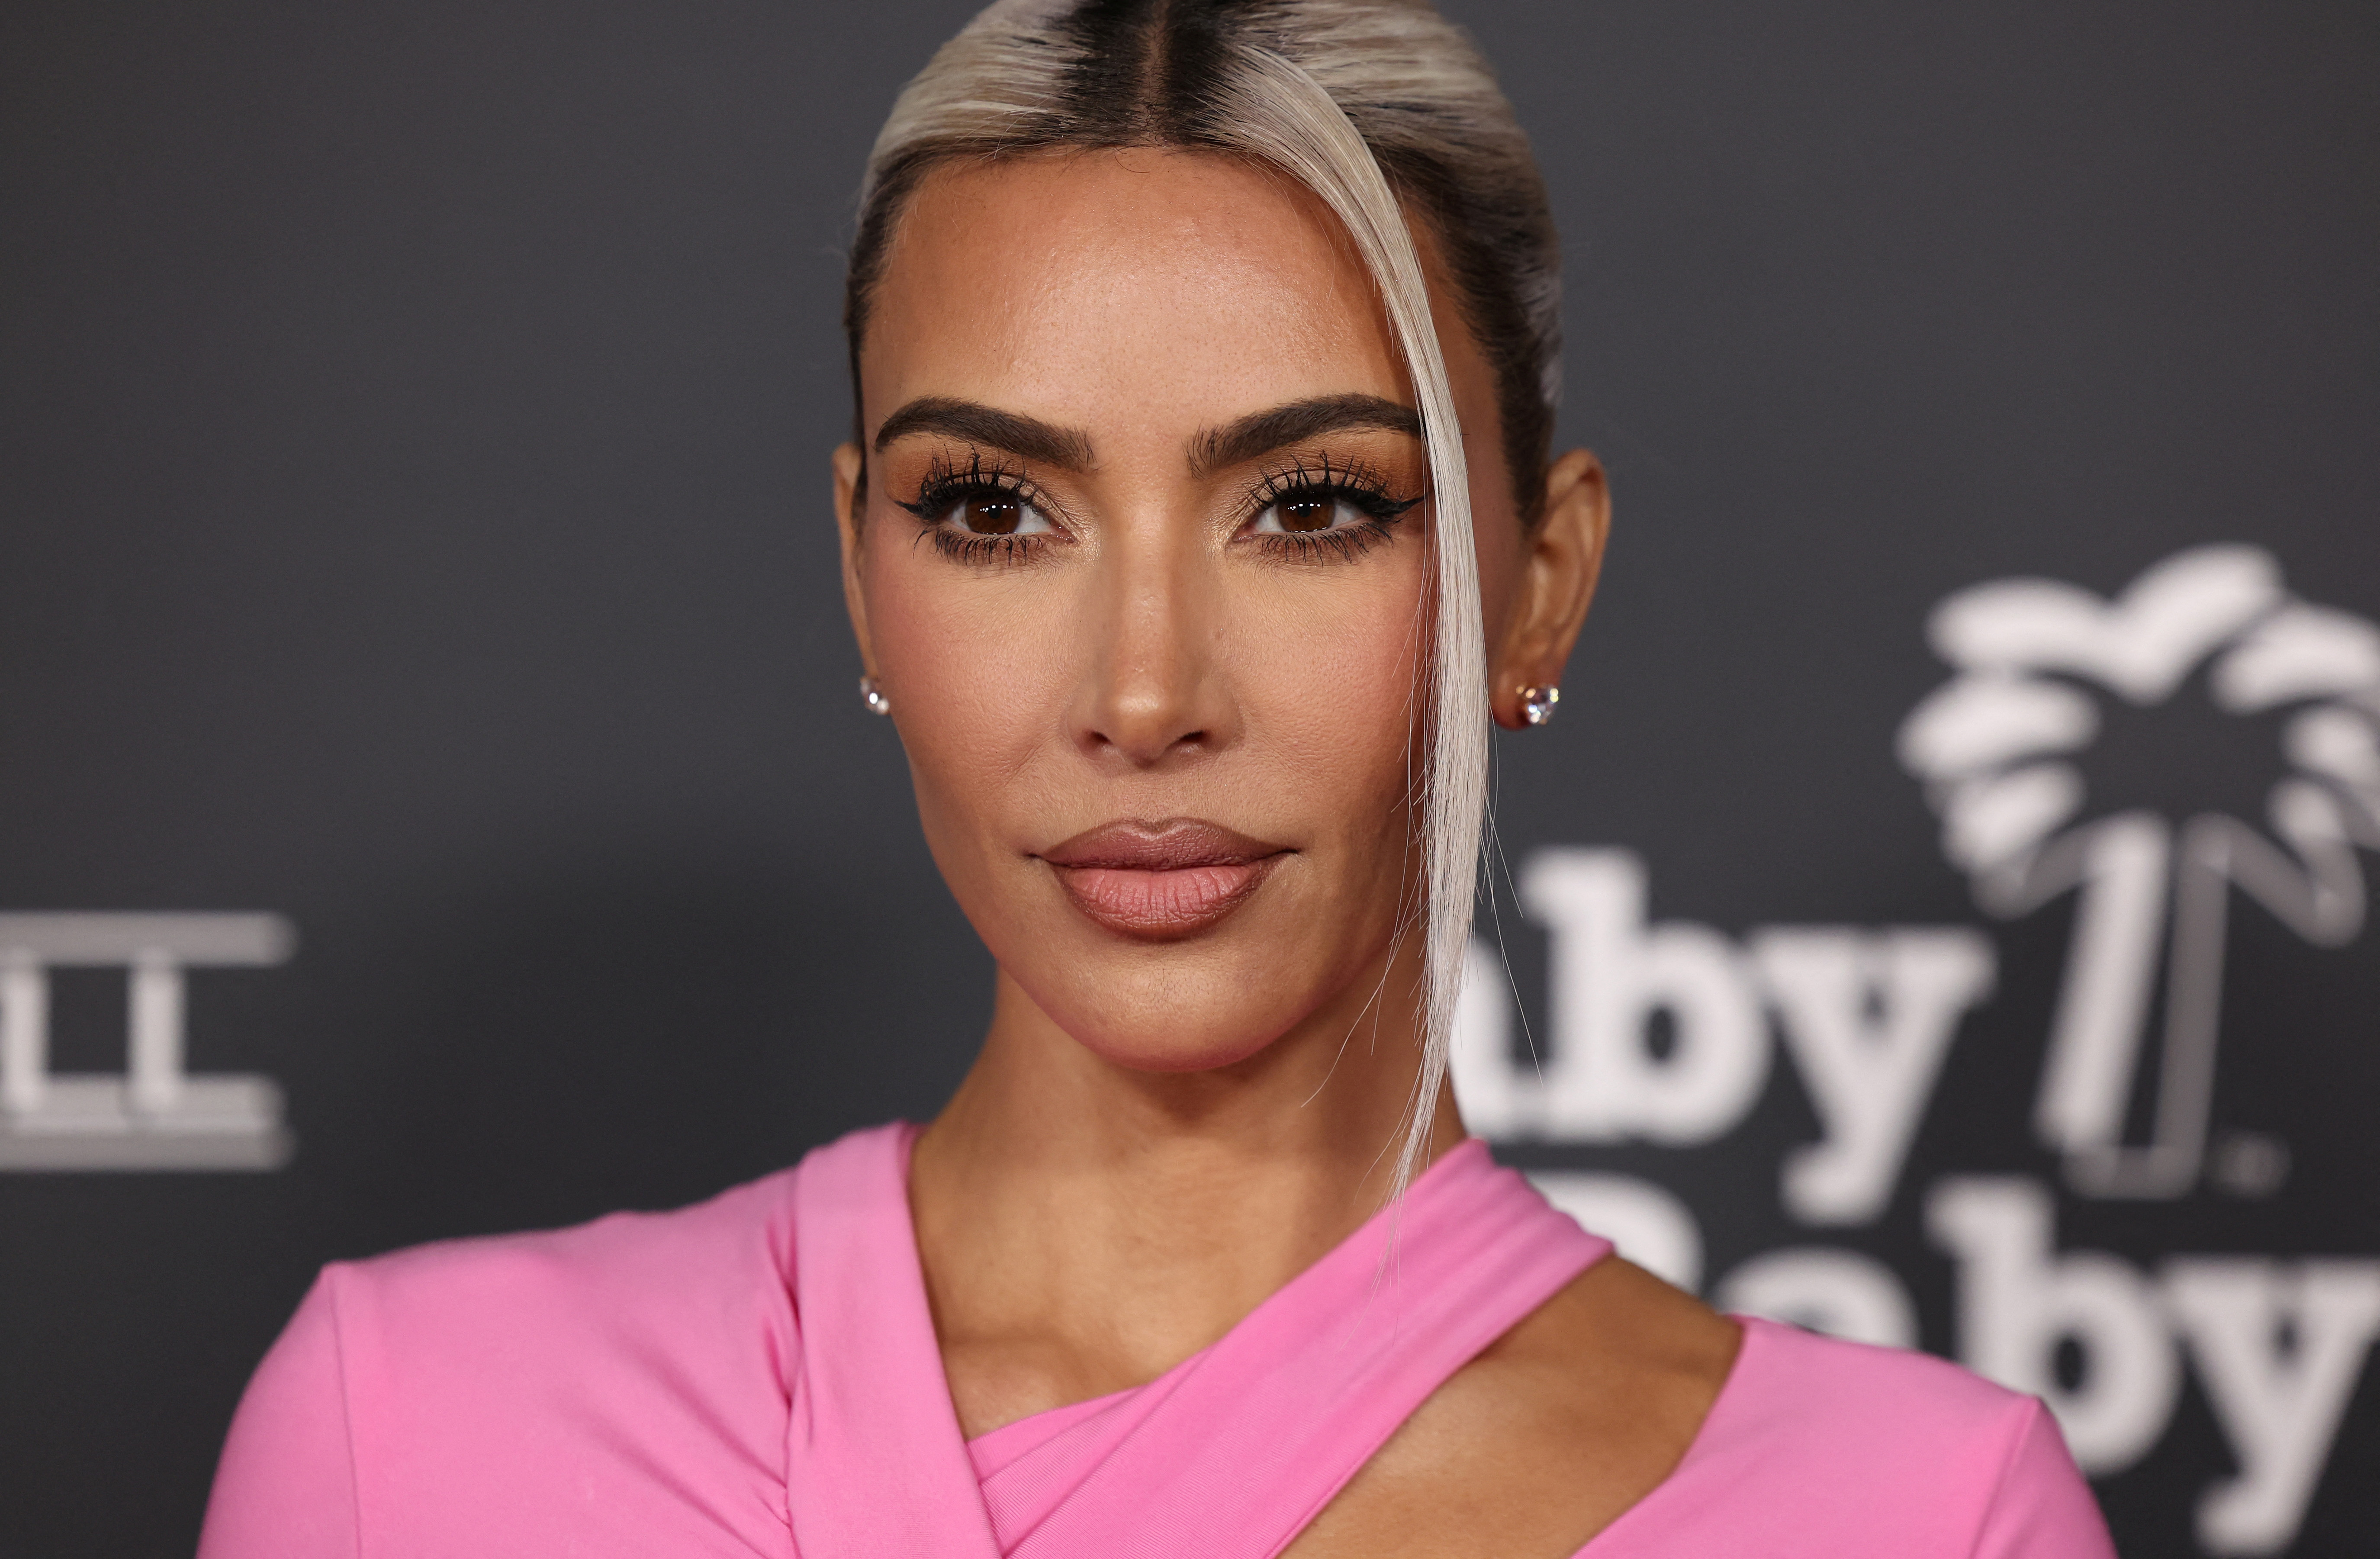 En febrero de 2021, Kardashian solicitó formalmente el divorcio al rapero tras más de 6 años de matrimonio en los que se convirtieron en una de las parejas más mediáticas del siglo. (REUTERS)